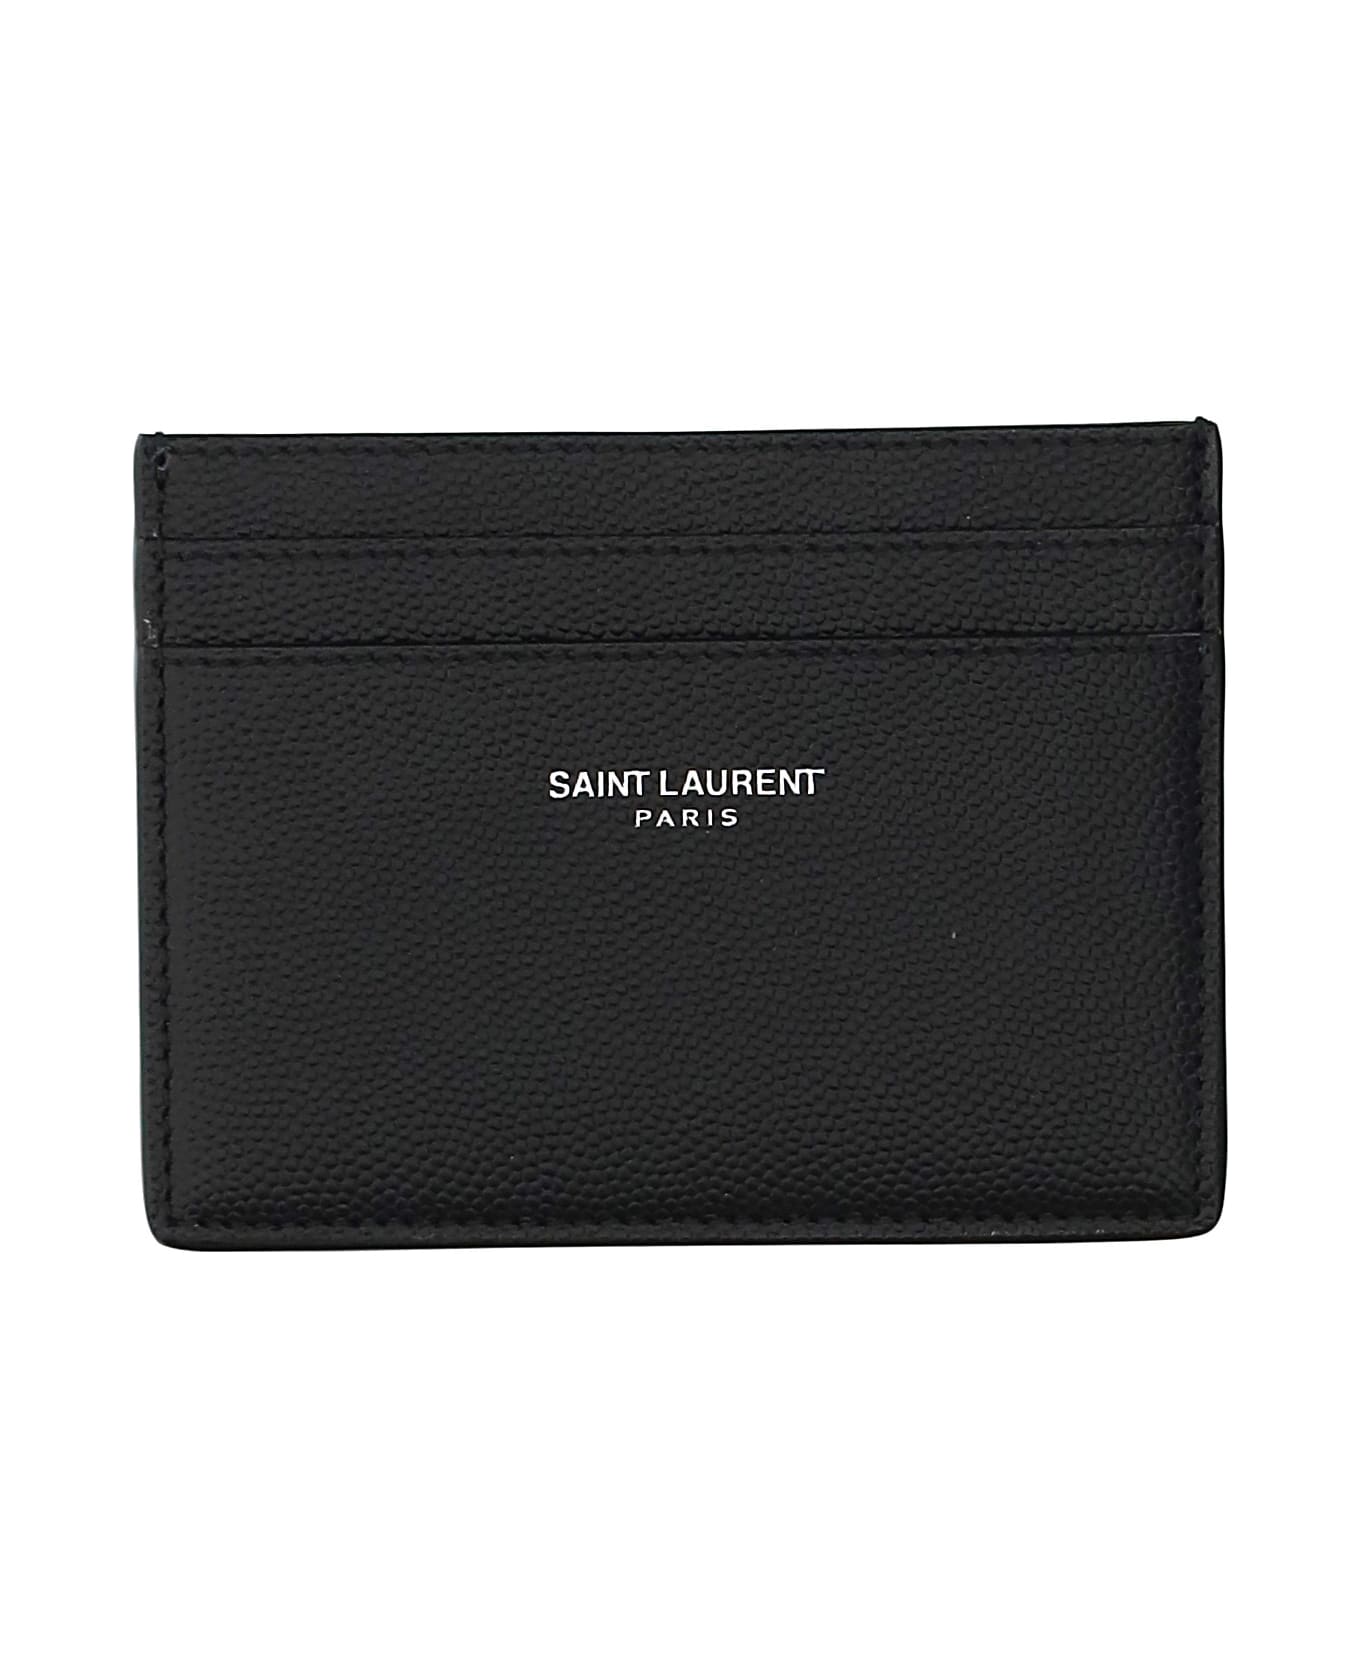 Saint Laurent Credit Card Holder - Nero 財布